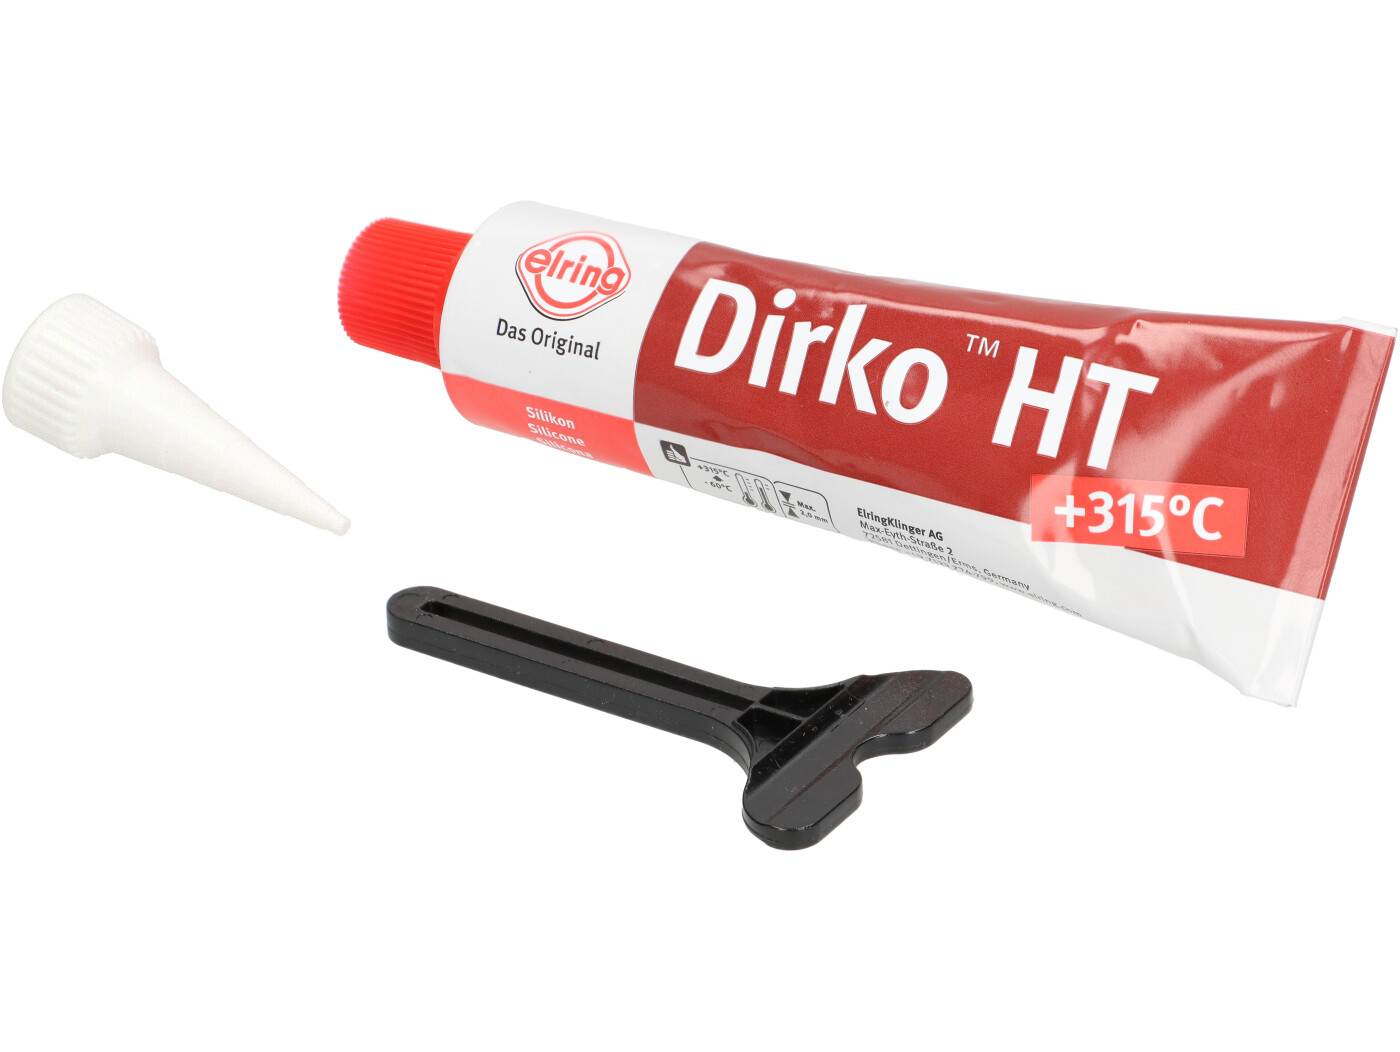 Dirko HT Dichtmasse für Motor Getriebe und Anbauteile Tube mit